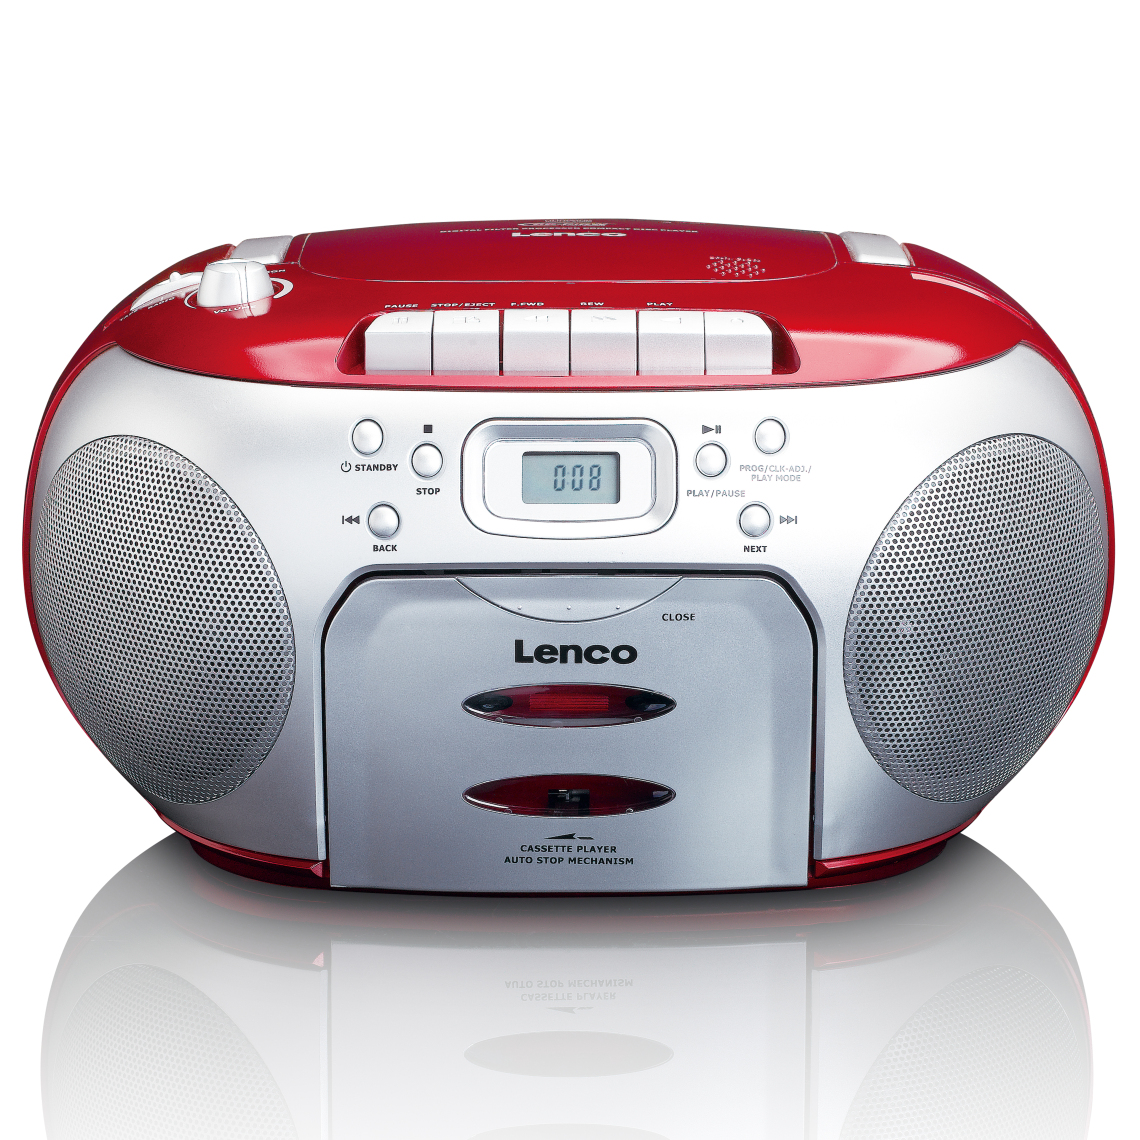 Lenco - Lecteur CD/radio FM stéréo portable SCD-420RD Rouge-Argent - Radio